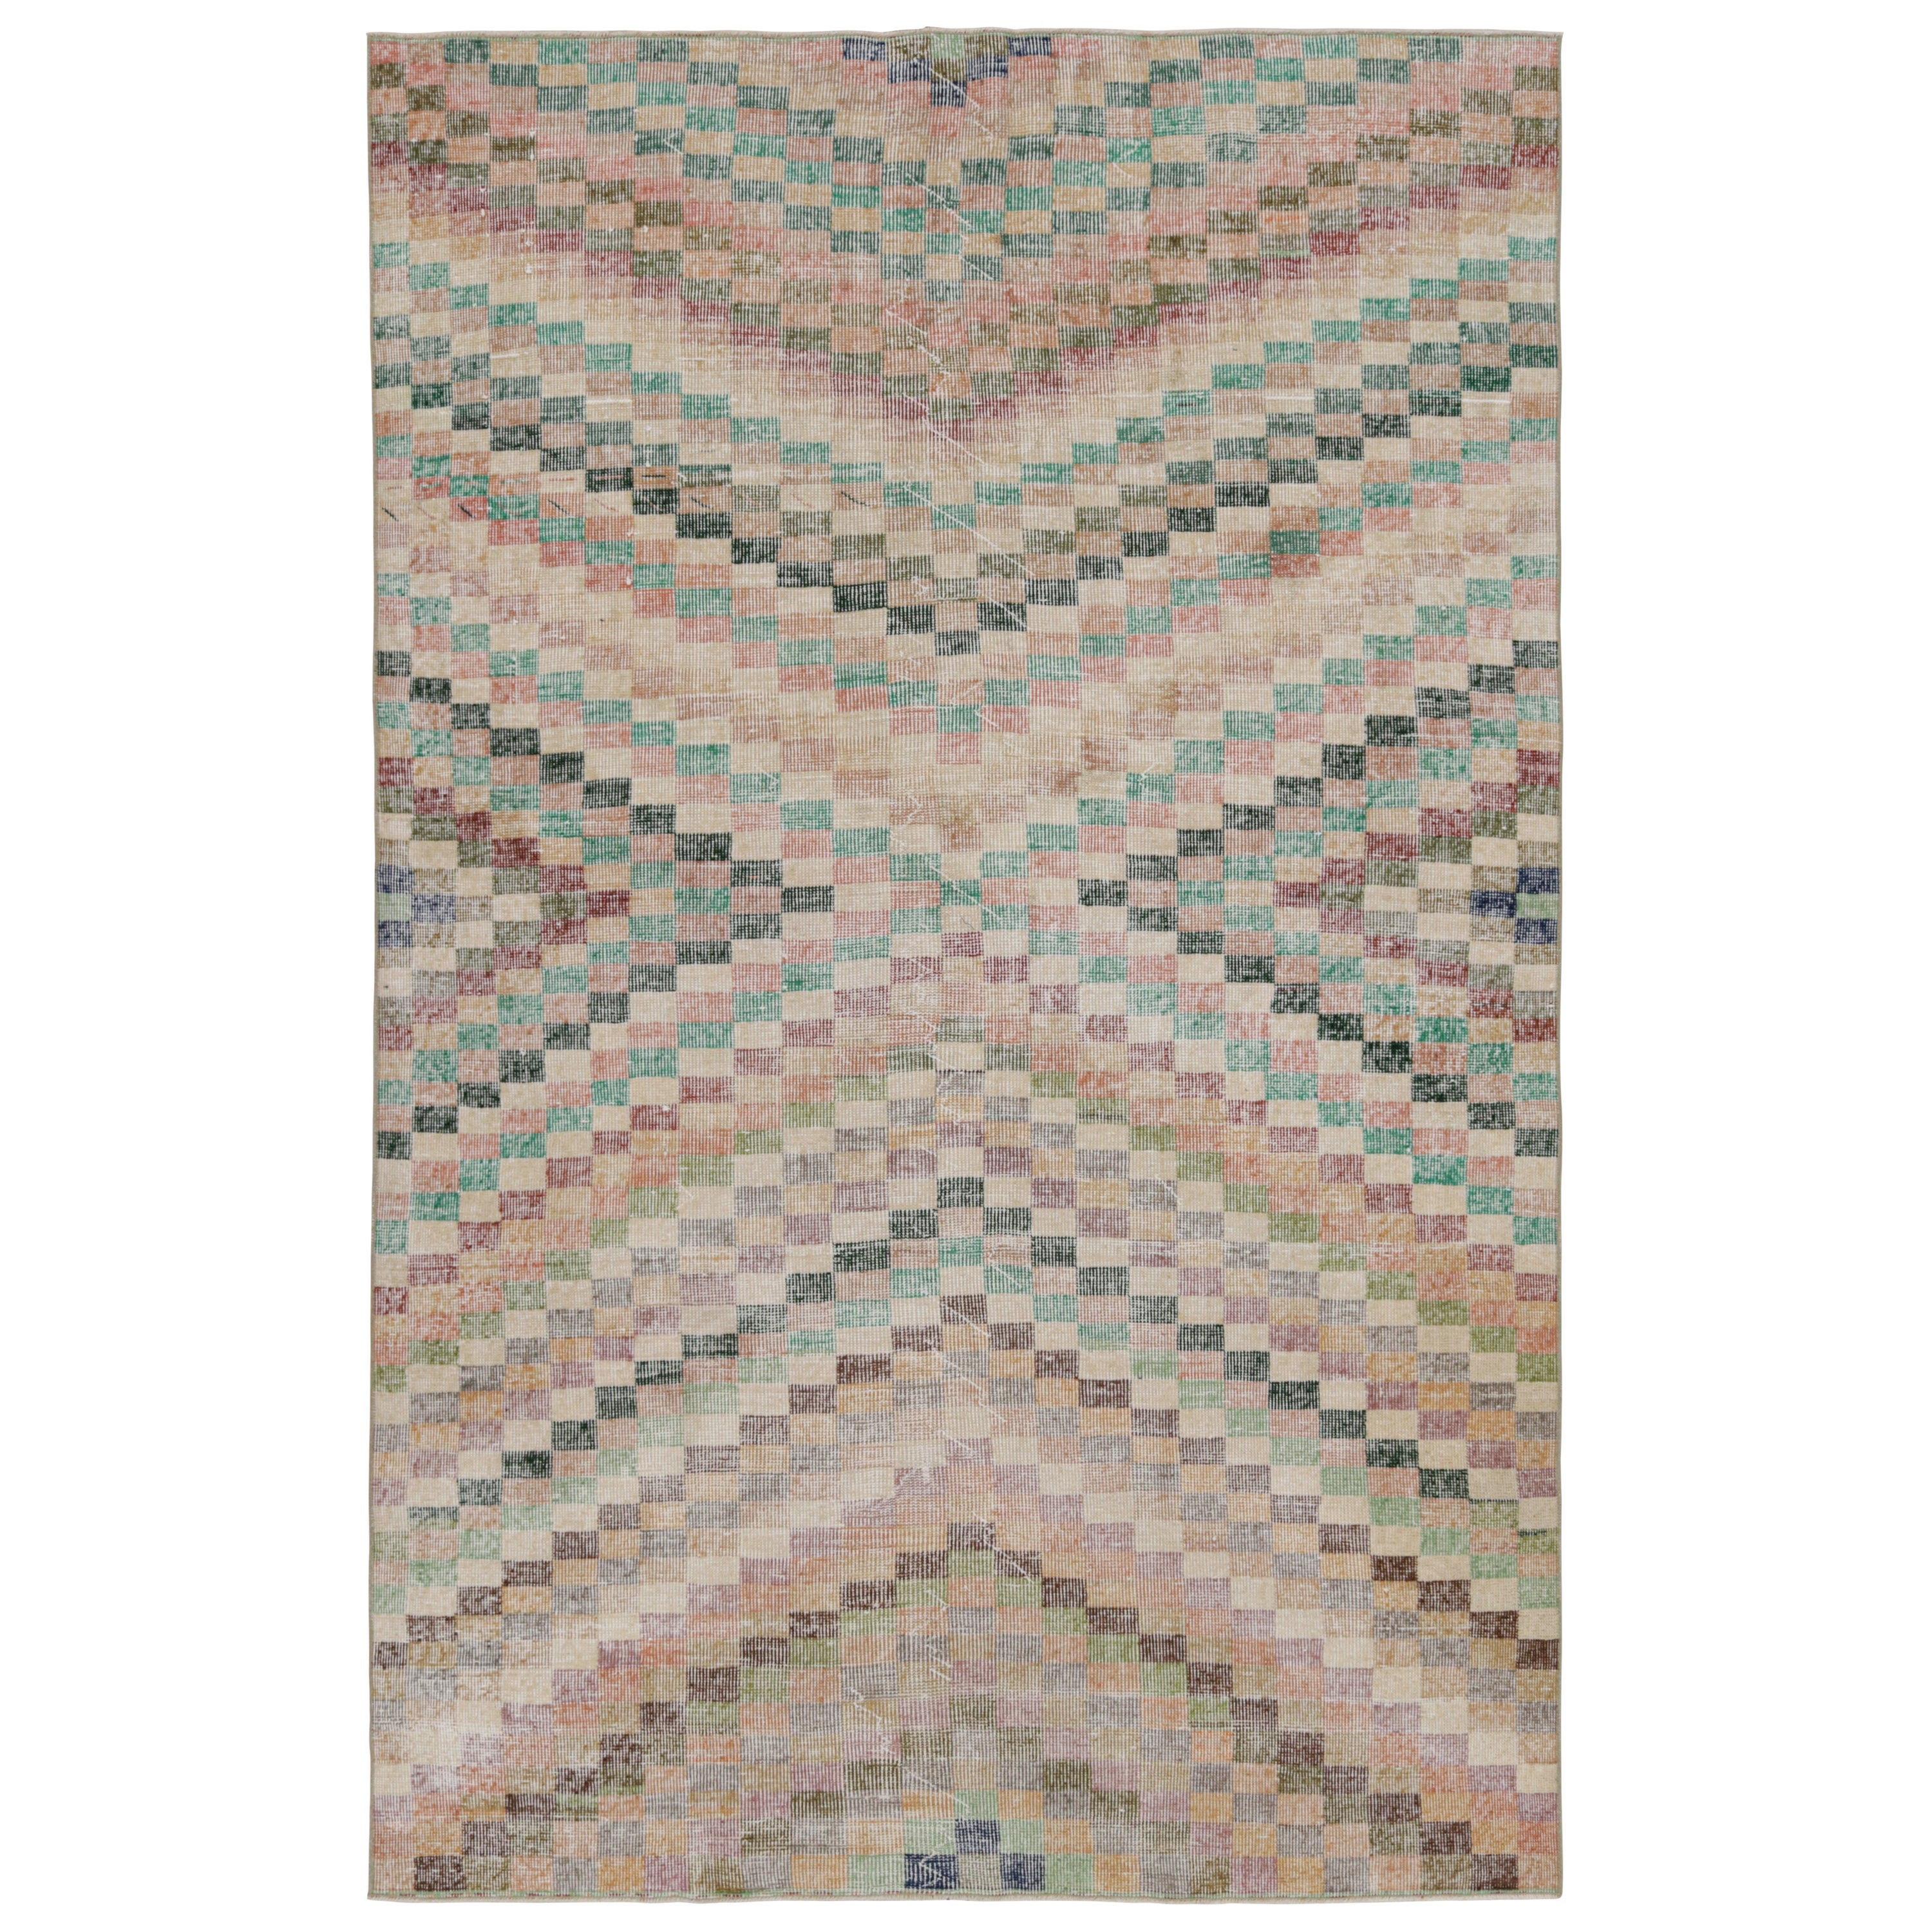 Vintage Zeki Müren Rug with Jewel tone Geometric Patterns, from Rug & Kilim  For Sale